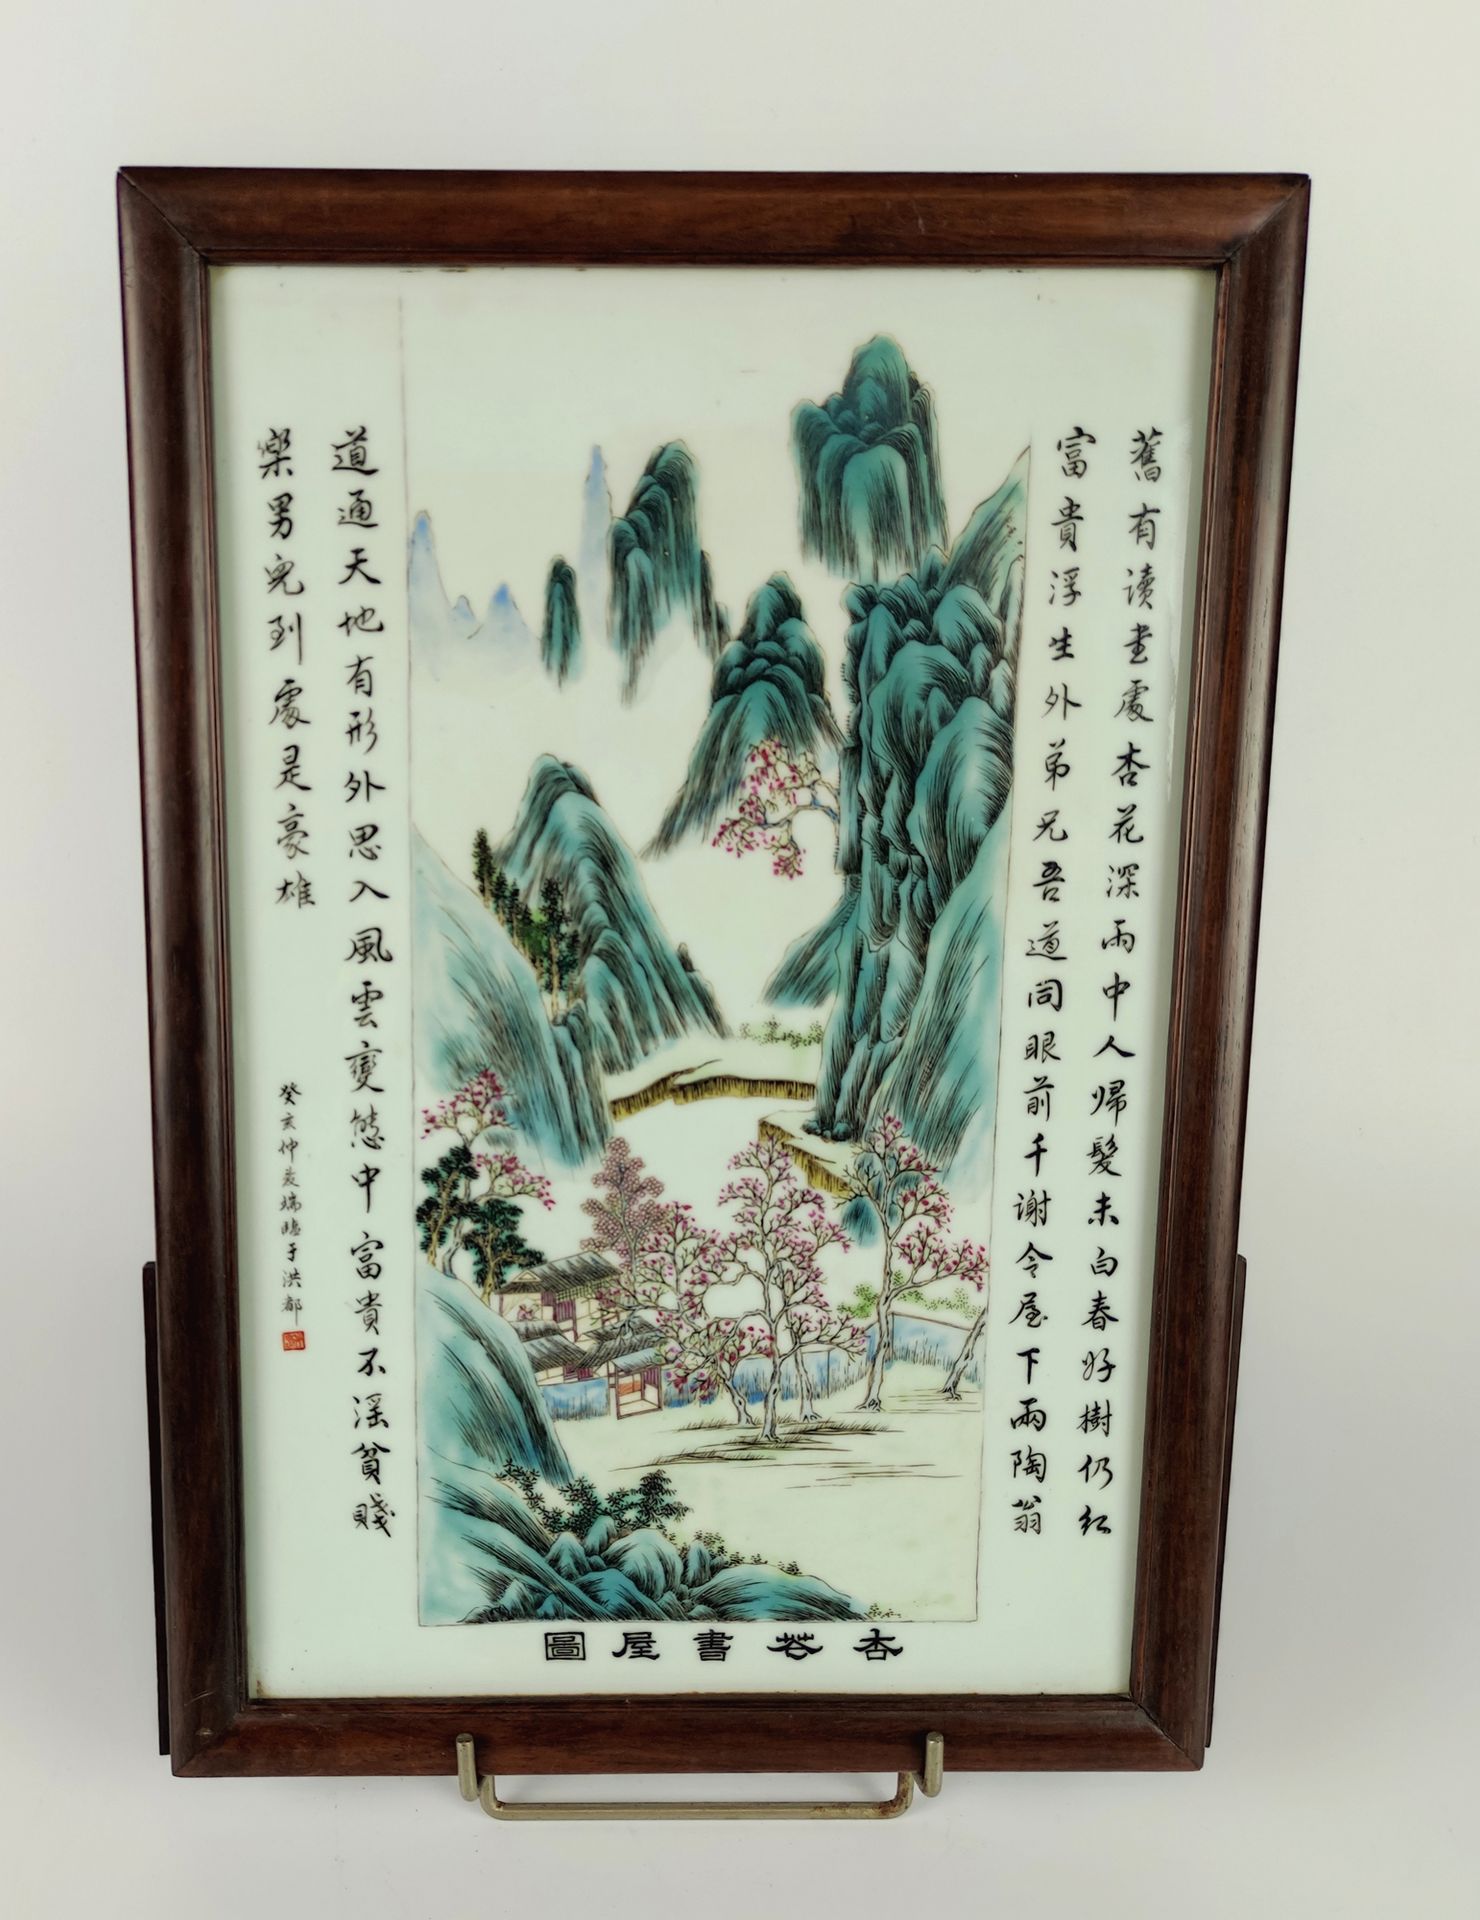 Null 中国 瓷盘，有多色和雕刻的湖泊风景装饰。铭文中的印章和诗句。 20世纪 38 x 25厘米